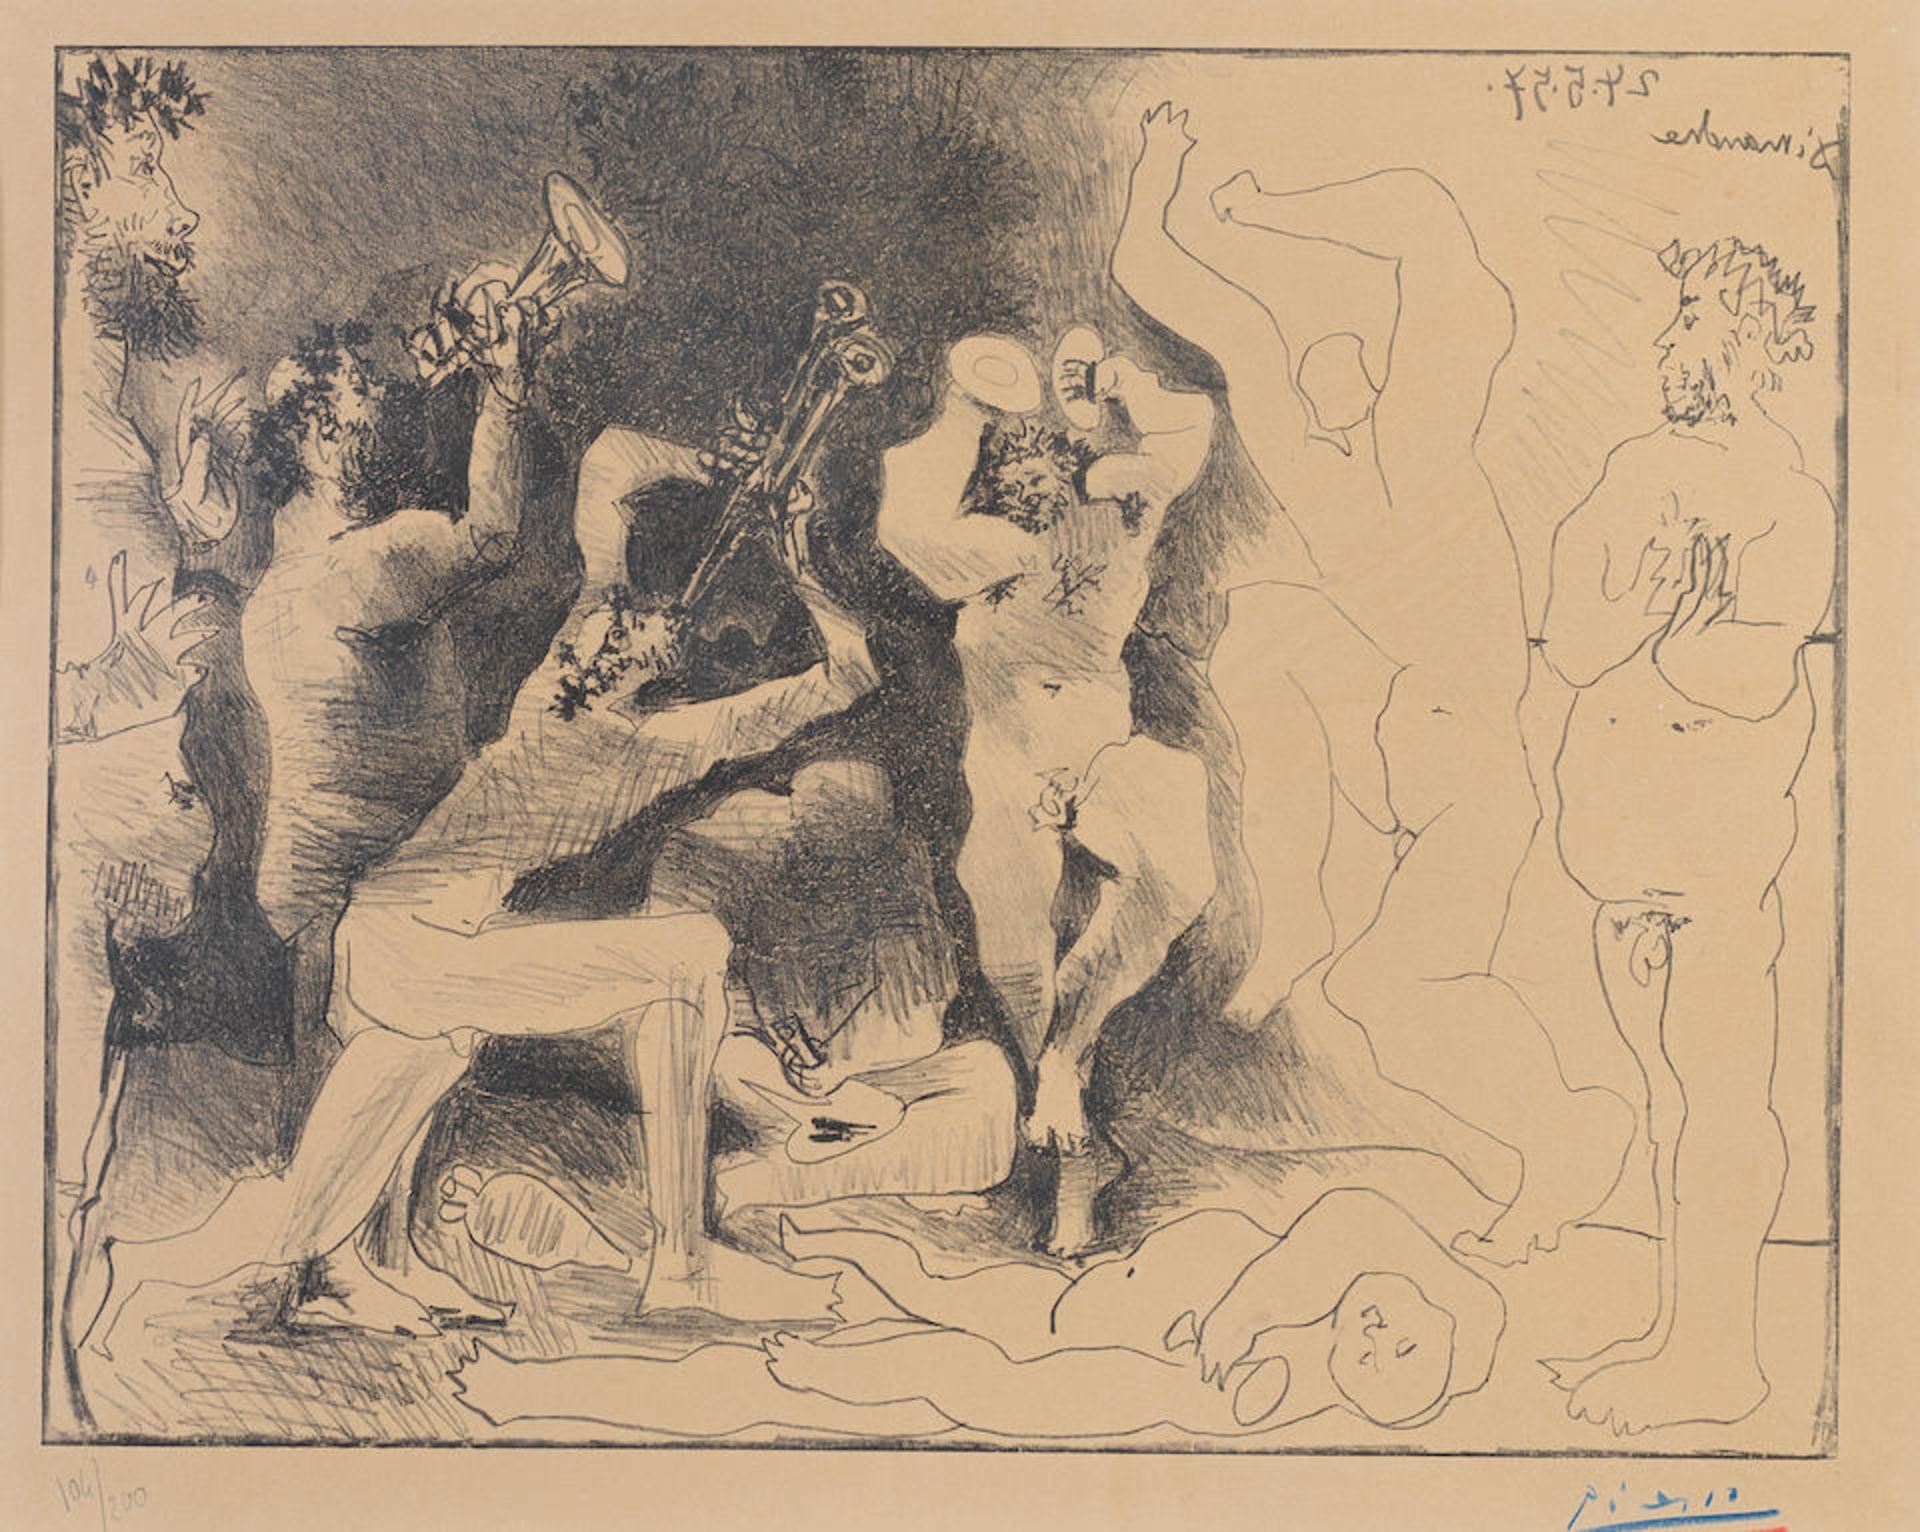 Pablo Picasso (Spanish, 1881-1973) La Danse des Faunes Lithograph, 1957, on Arches wove paper, s...